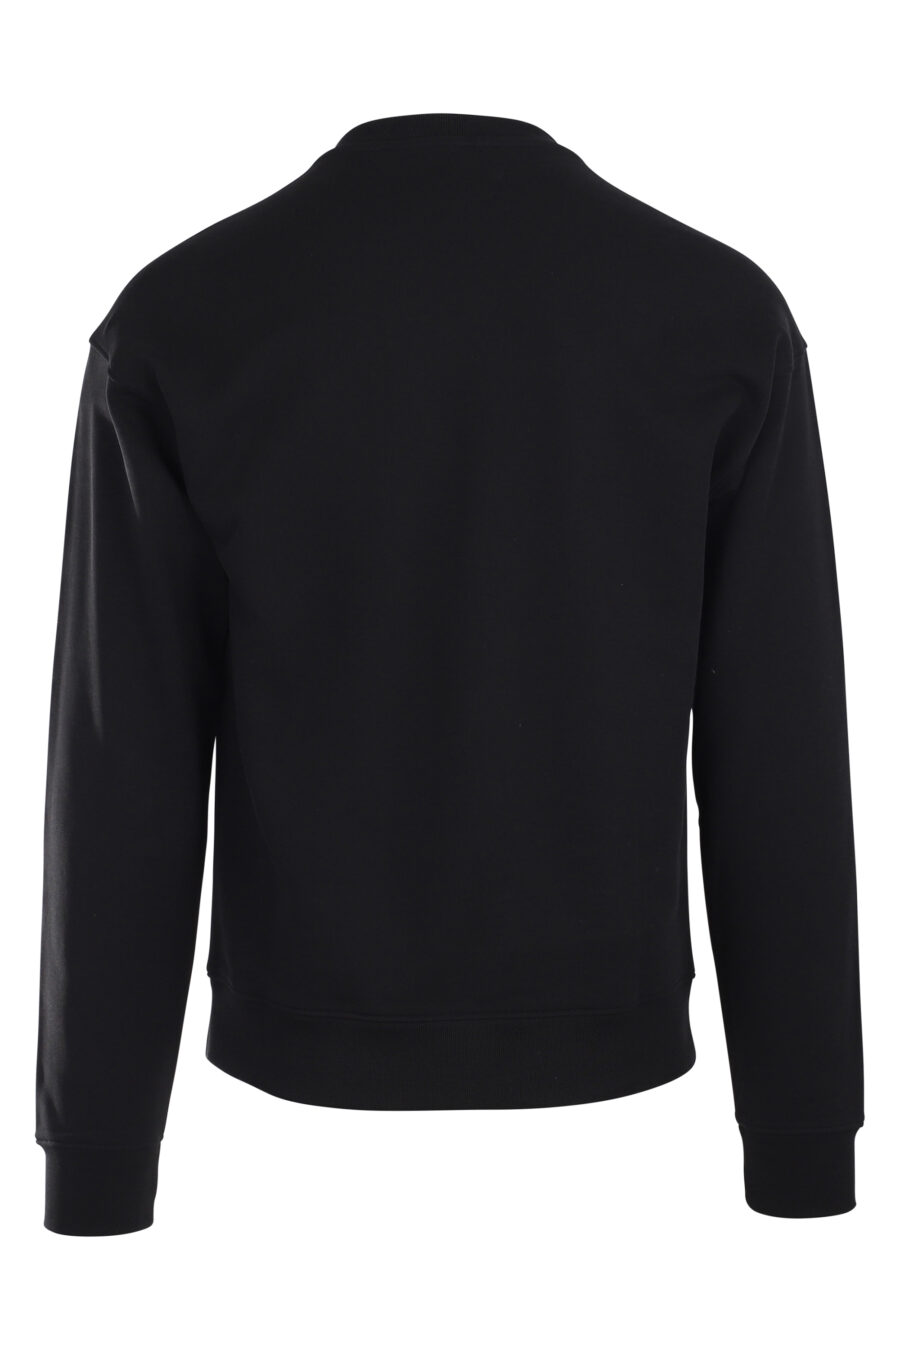 Schwarzes Sweatshirt mit Mailänder Logo - IMG 9883